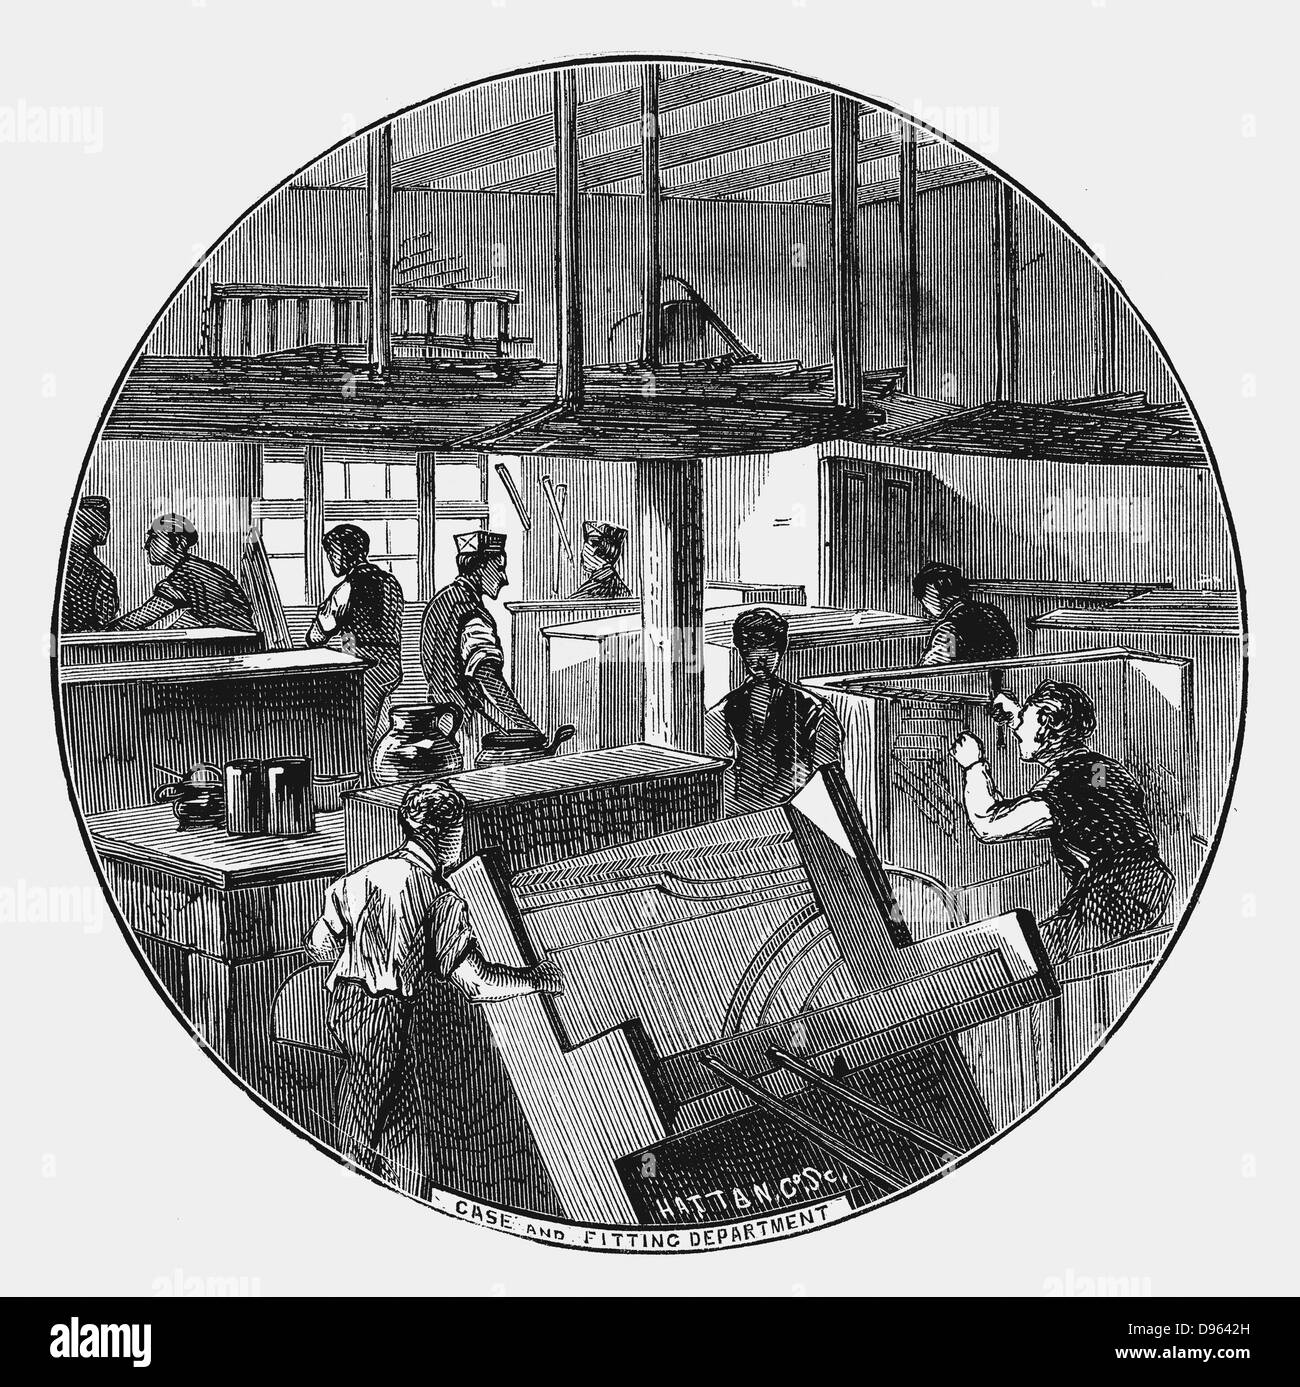 Fall und Montage-Abteilung, Chappell & Unternehmens Klavierwerke, Belmont Street, Chalk Farm Road, London. Holzstich 1870 Stockfoto